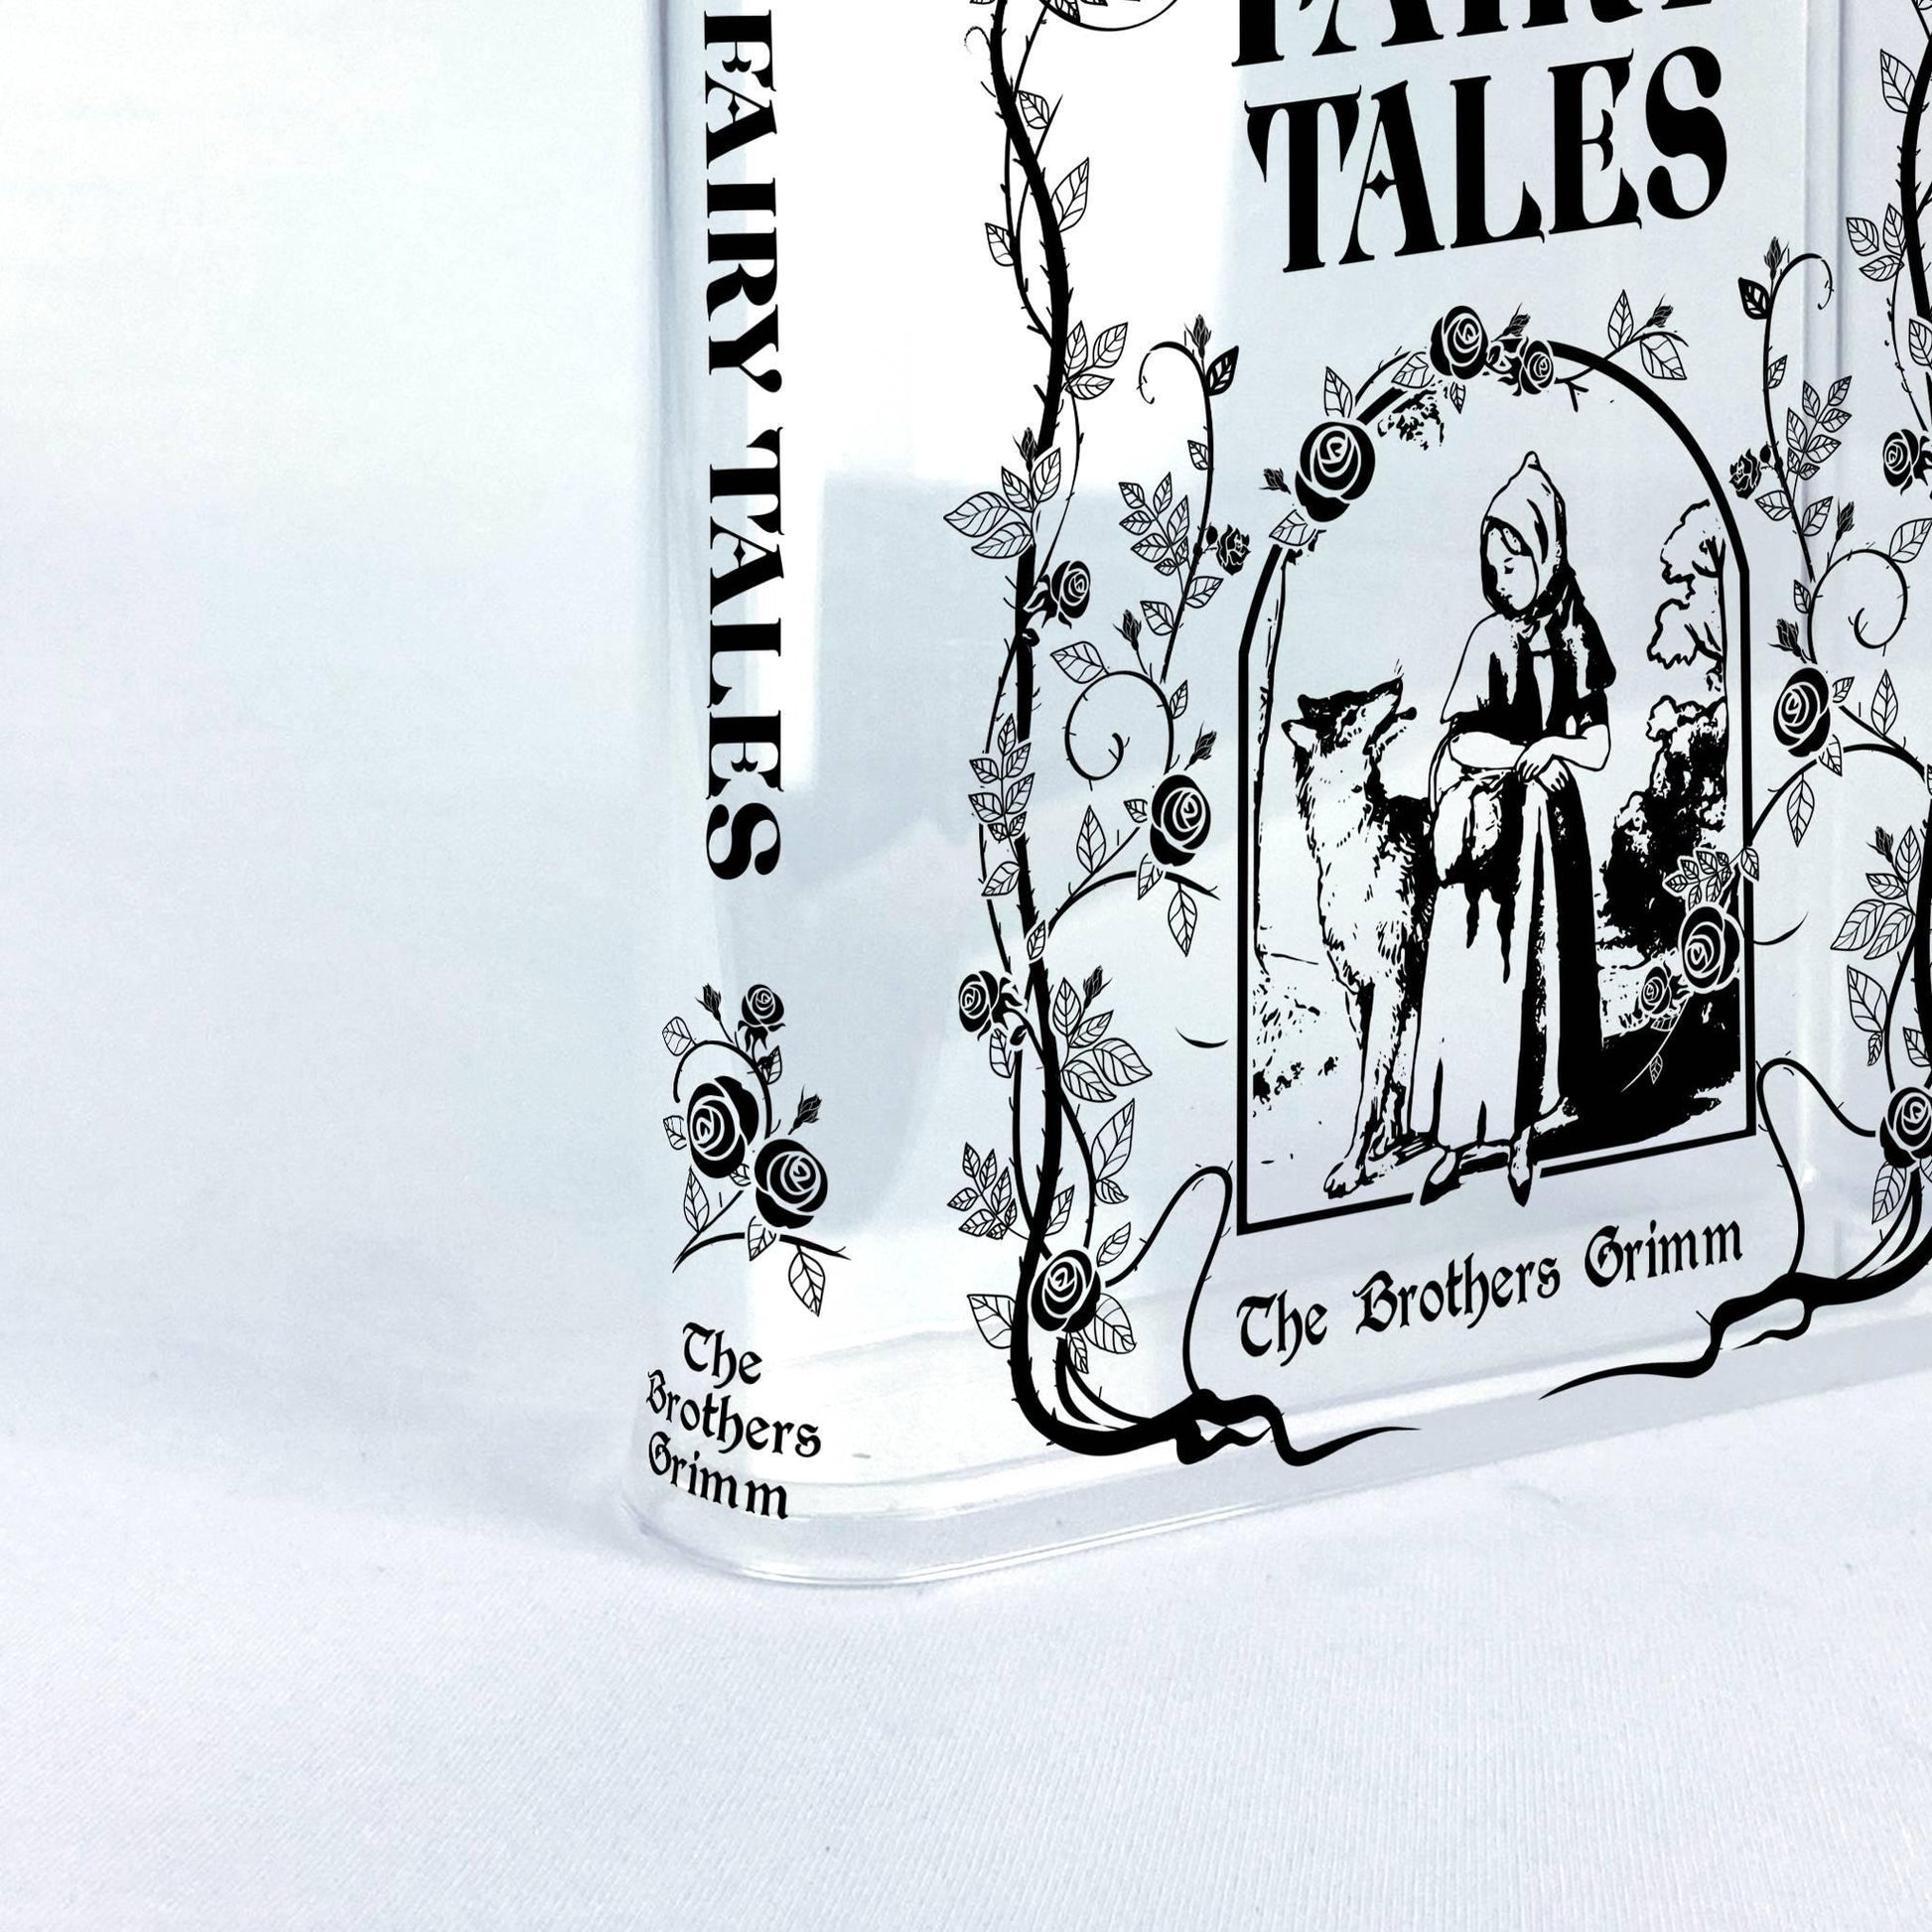 Grimms' Fairy Tales Acrylic Book Vase - Biblio Bloom